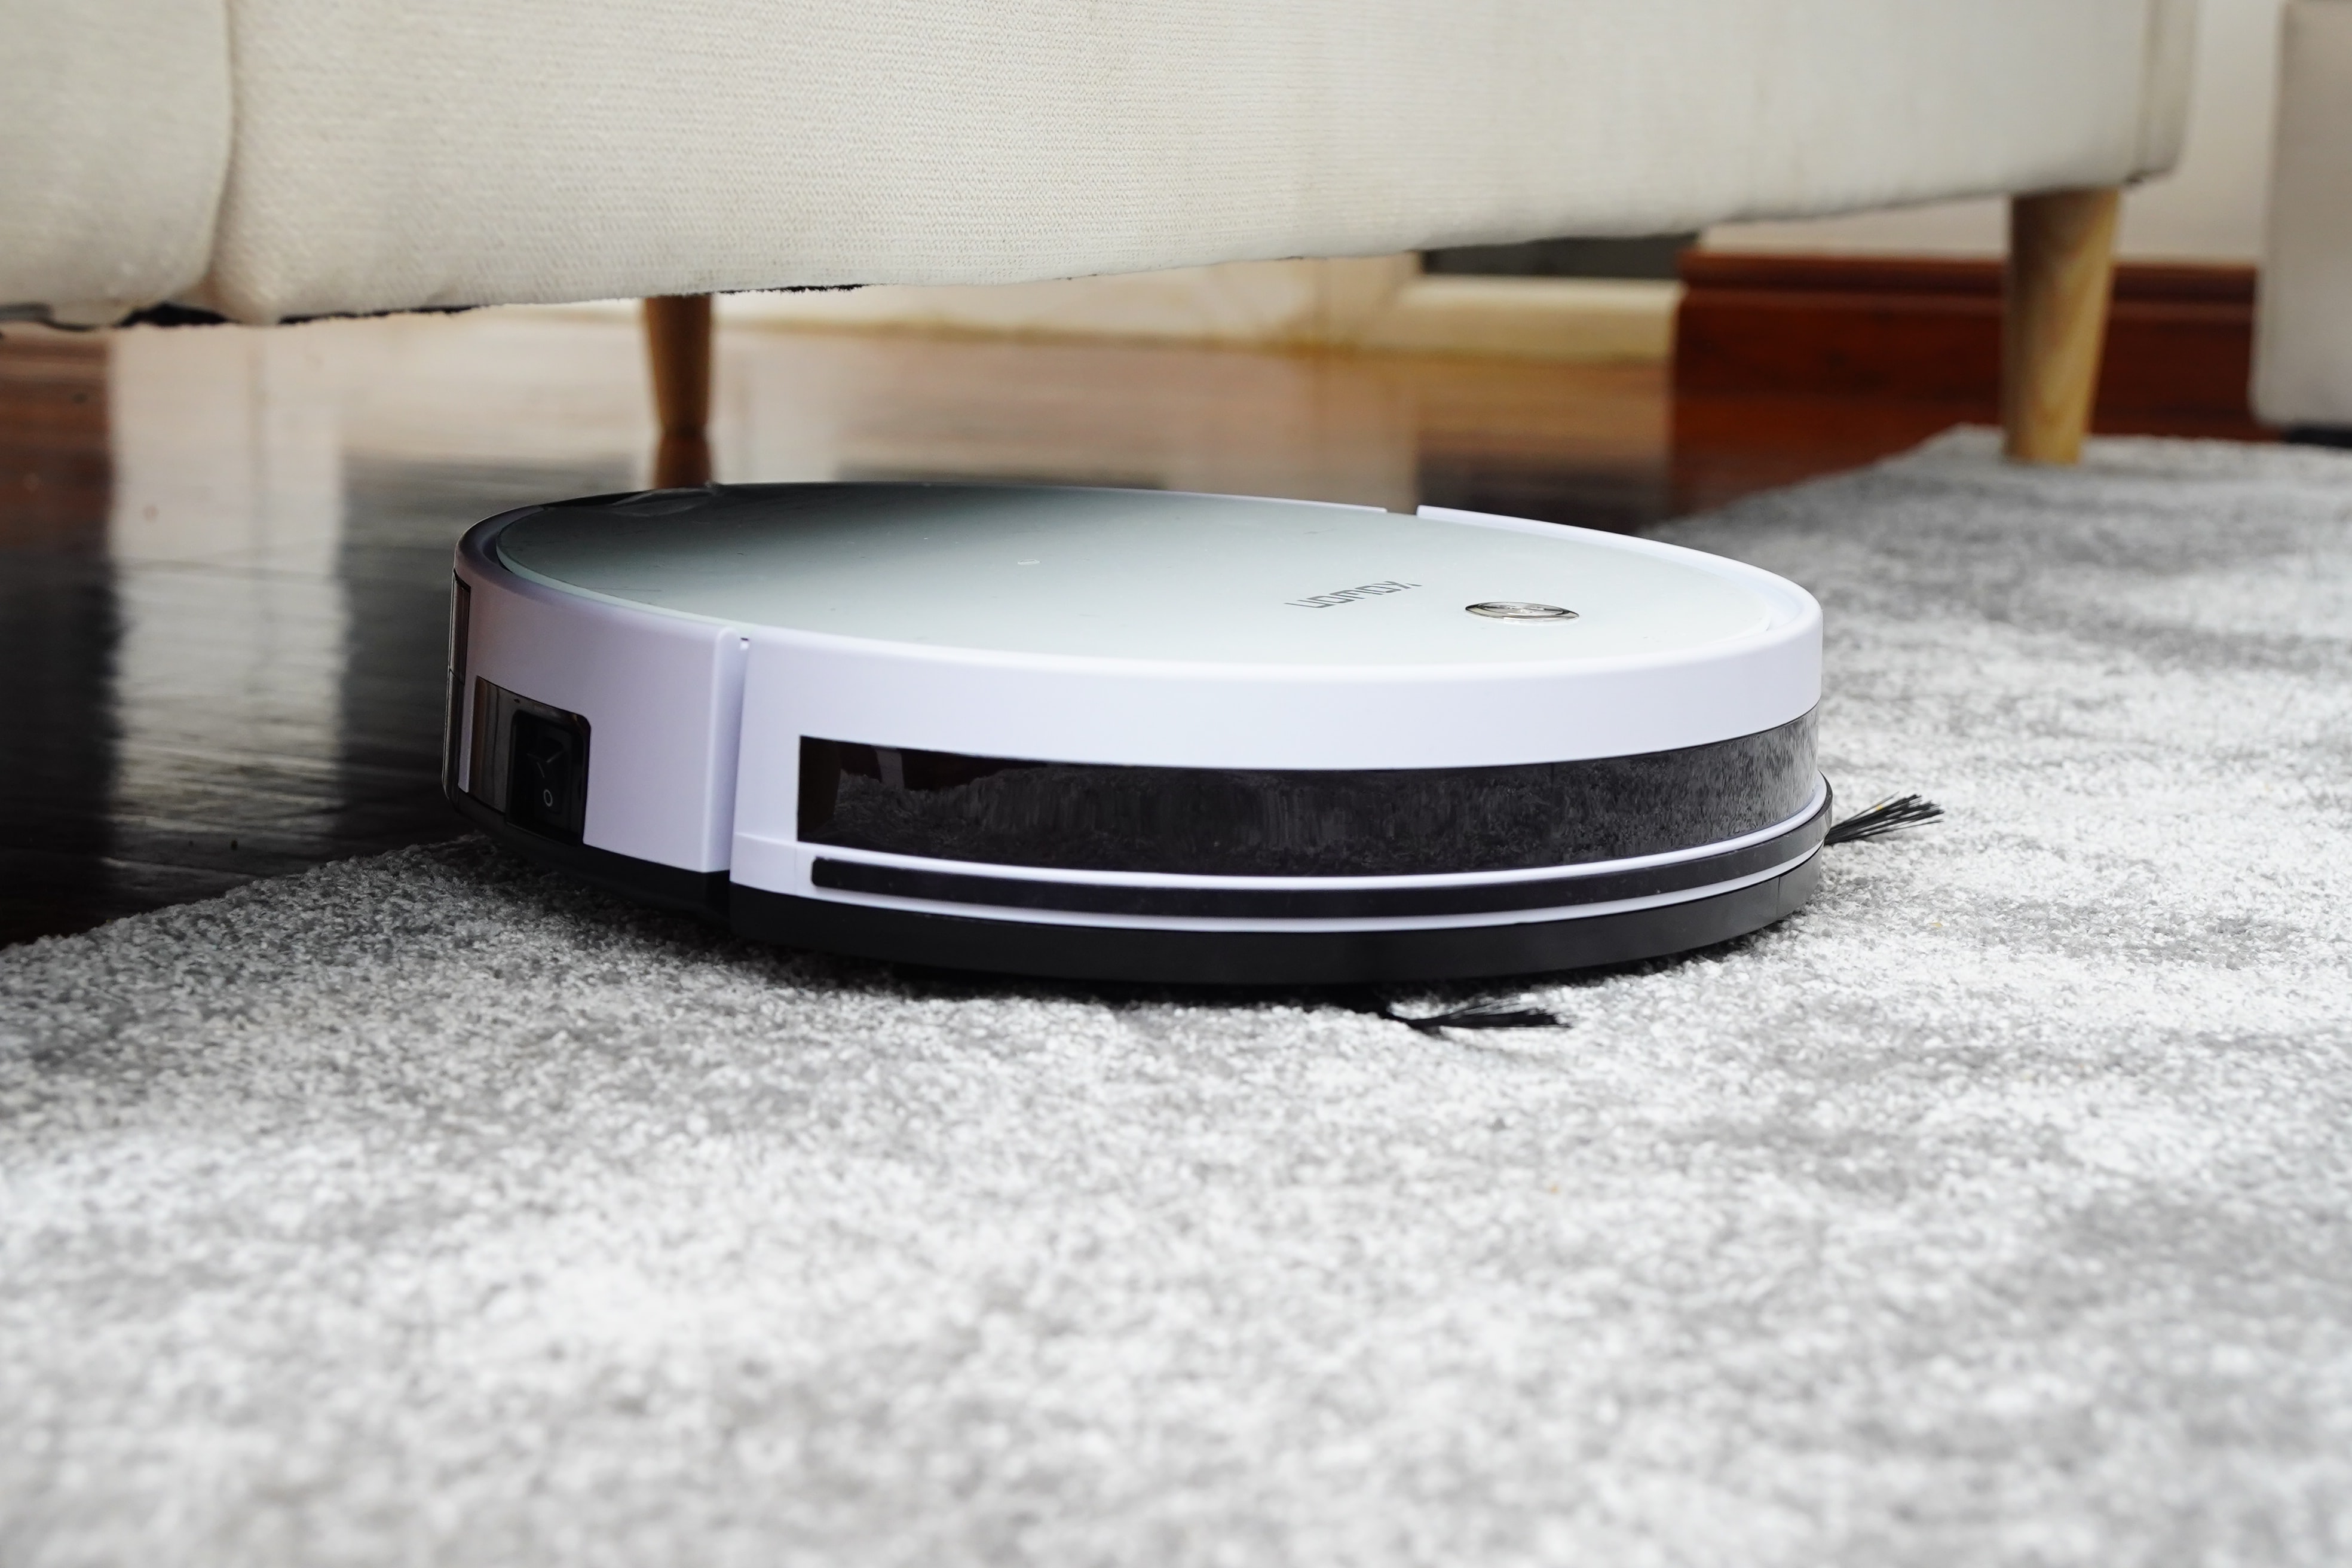 El iRobot Roomba s9+ ¿merece la pena?